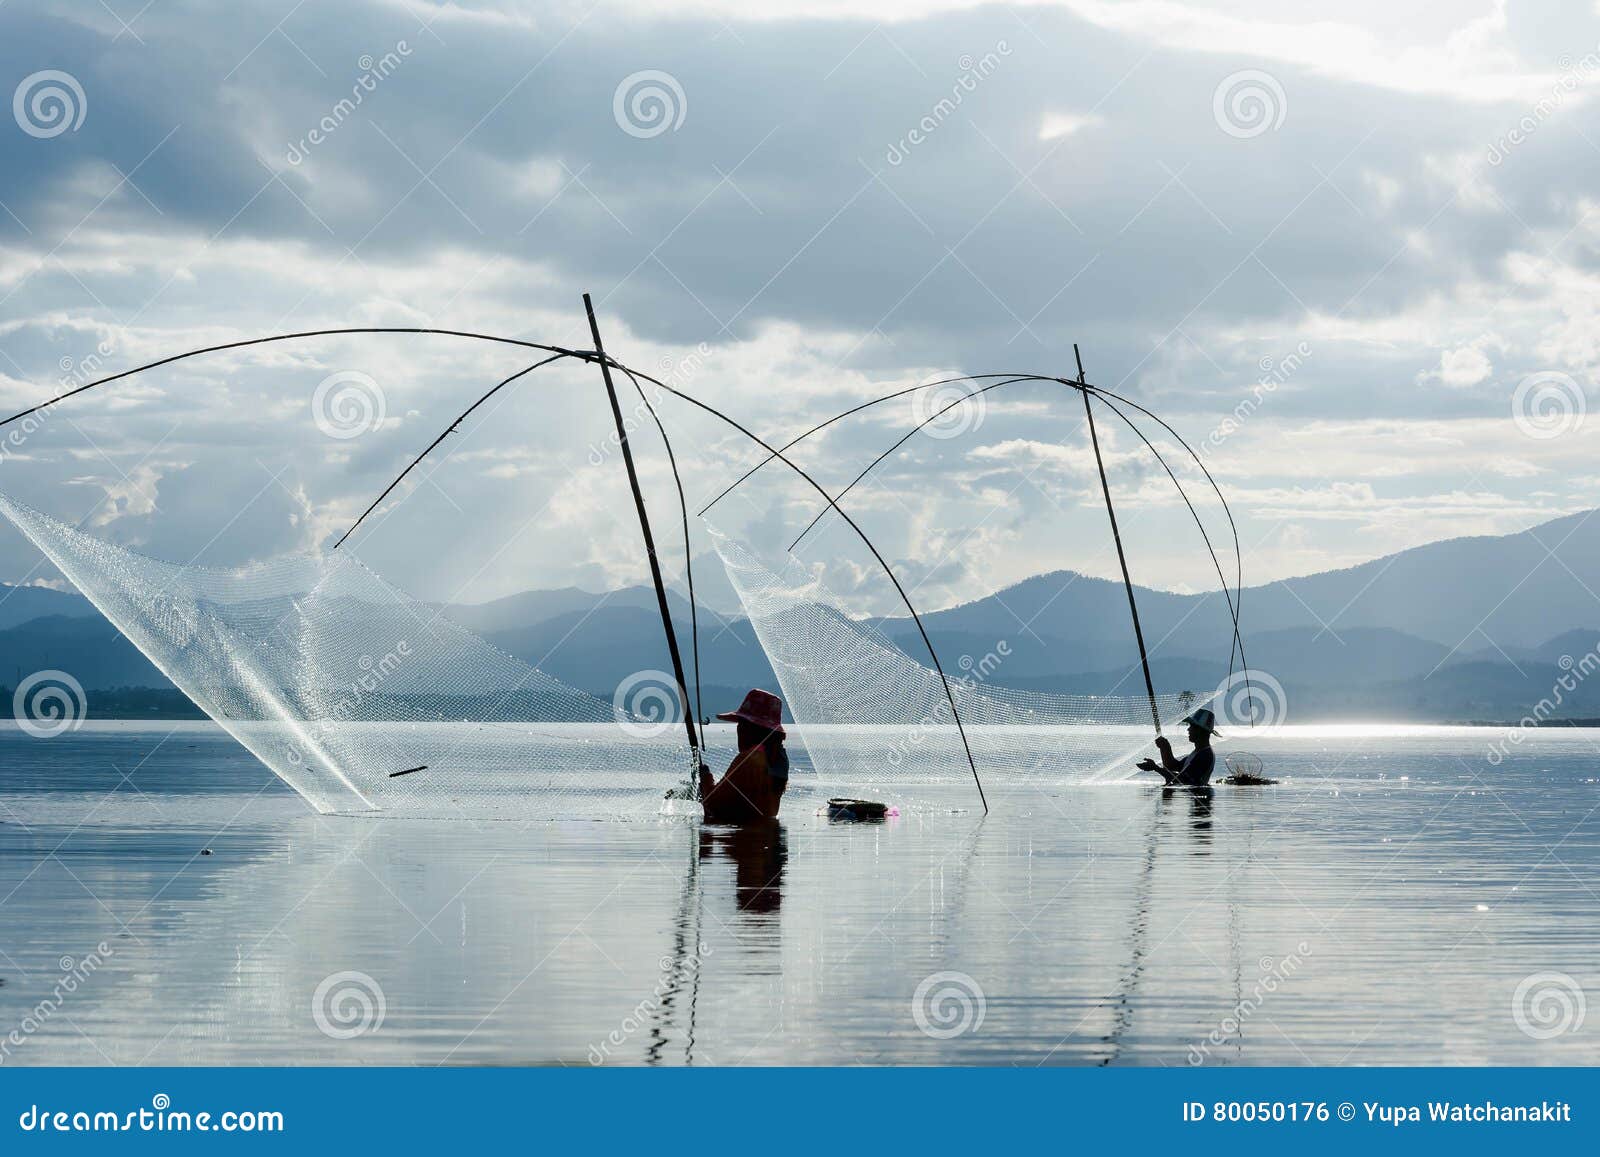 Fisher Man Use Square Dip Net Fishing at Lake Stock Photo - Image